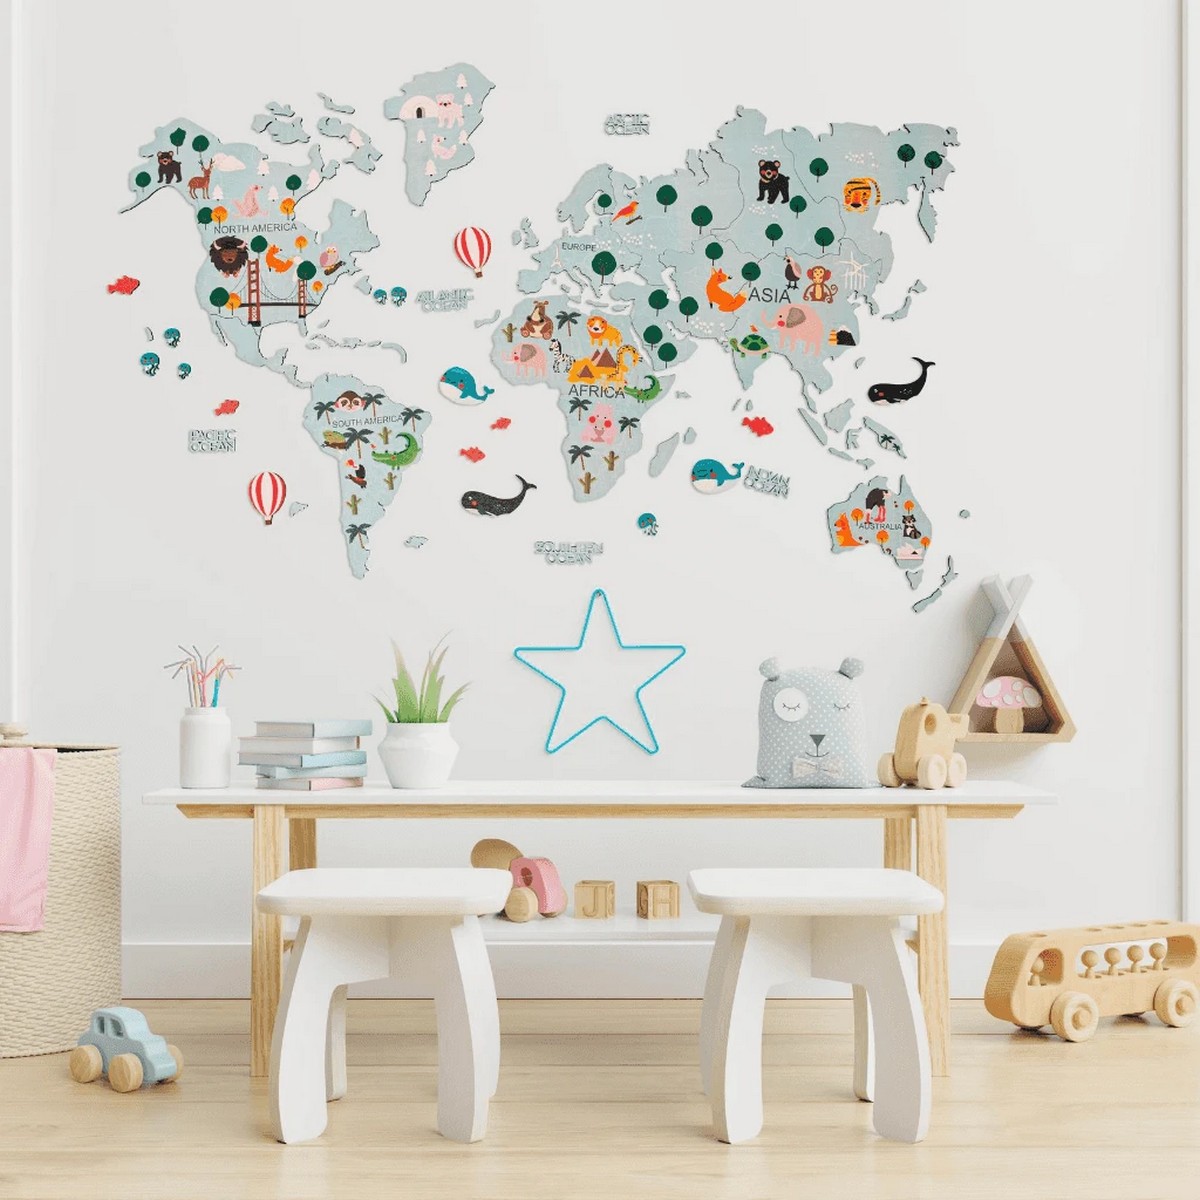 نقشه جهان برای کودکان